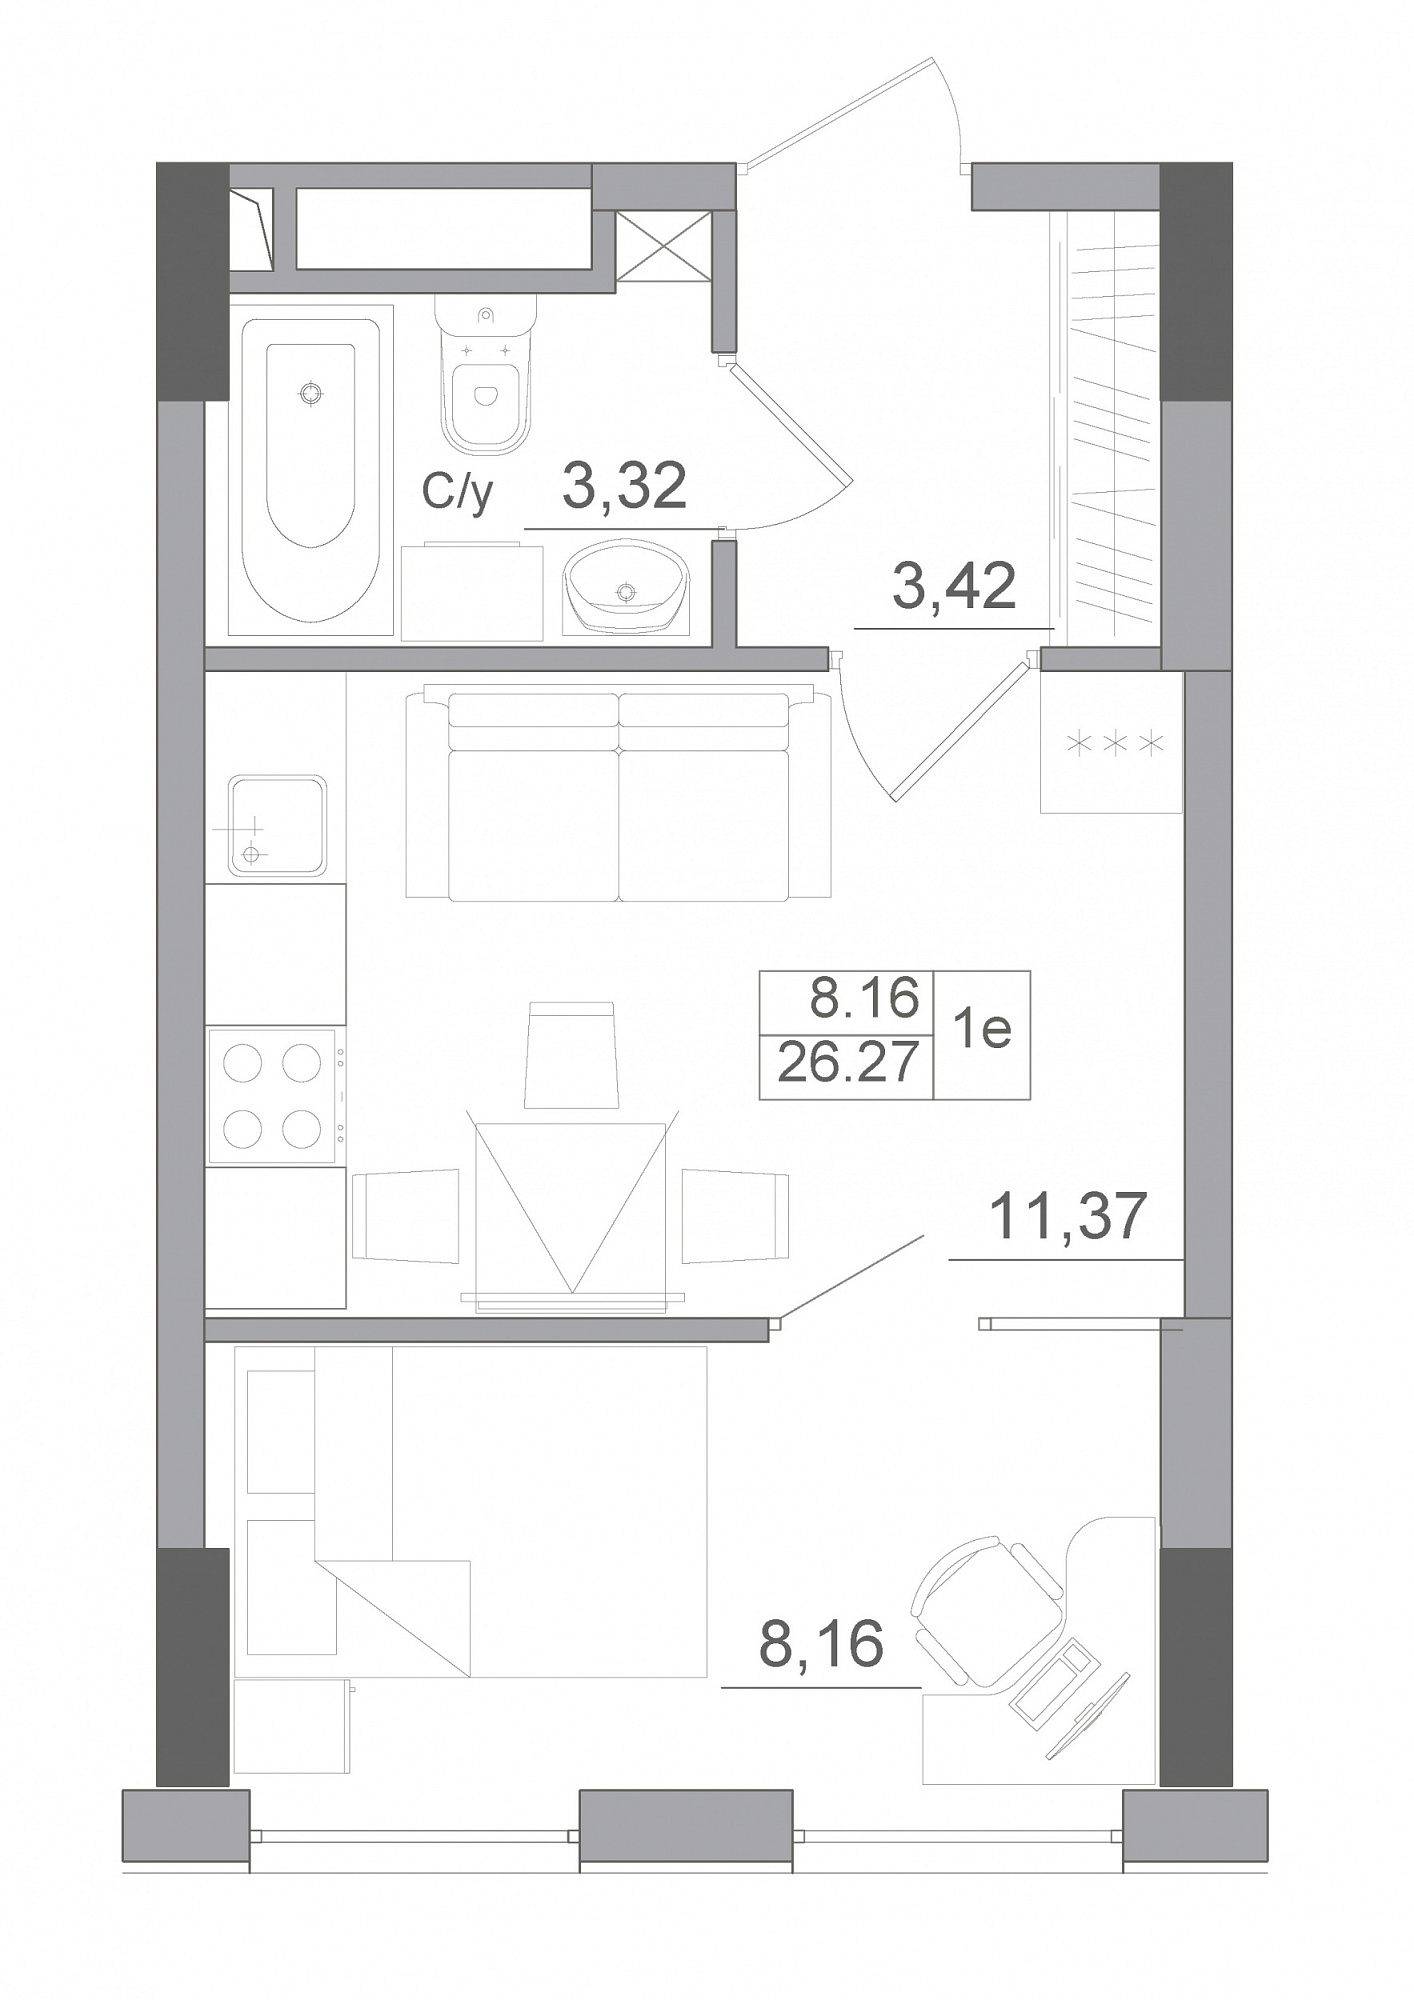 Планування 1-к квартира площею 26.27м2, AB-22-08/00009.